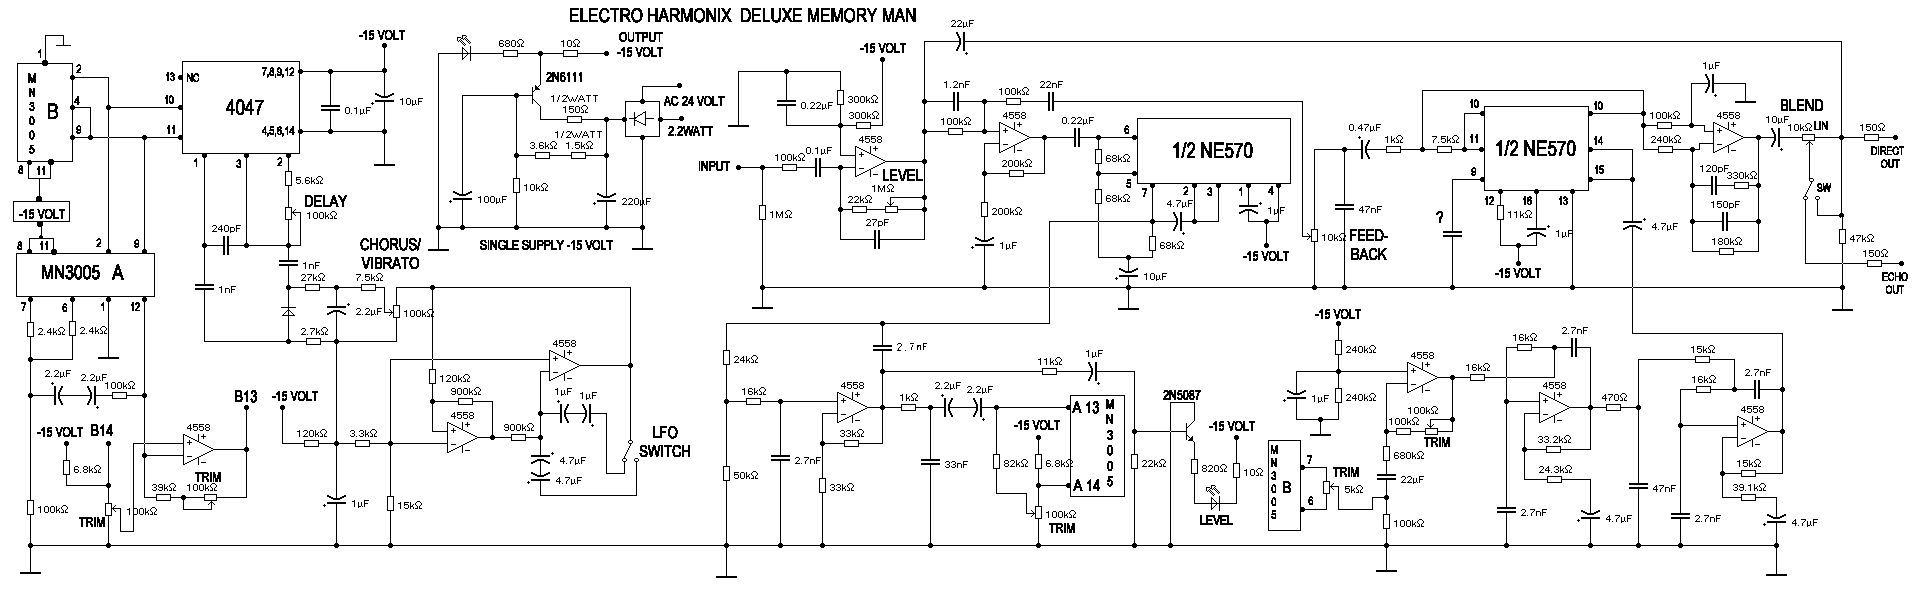 Принципиальная схема эффекта Electro Harmonix Deluxe Memory Man